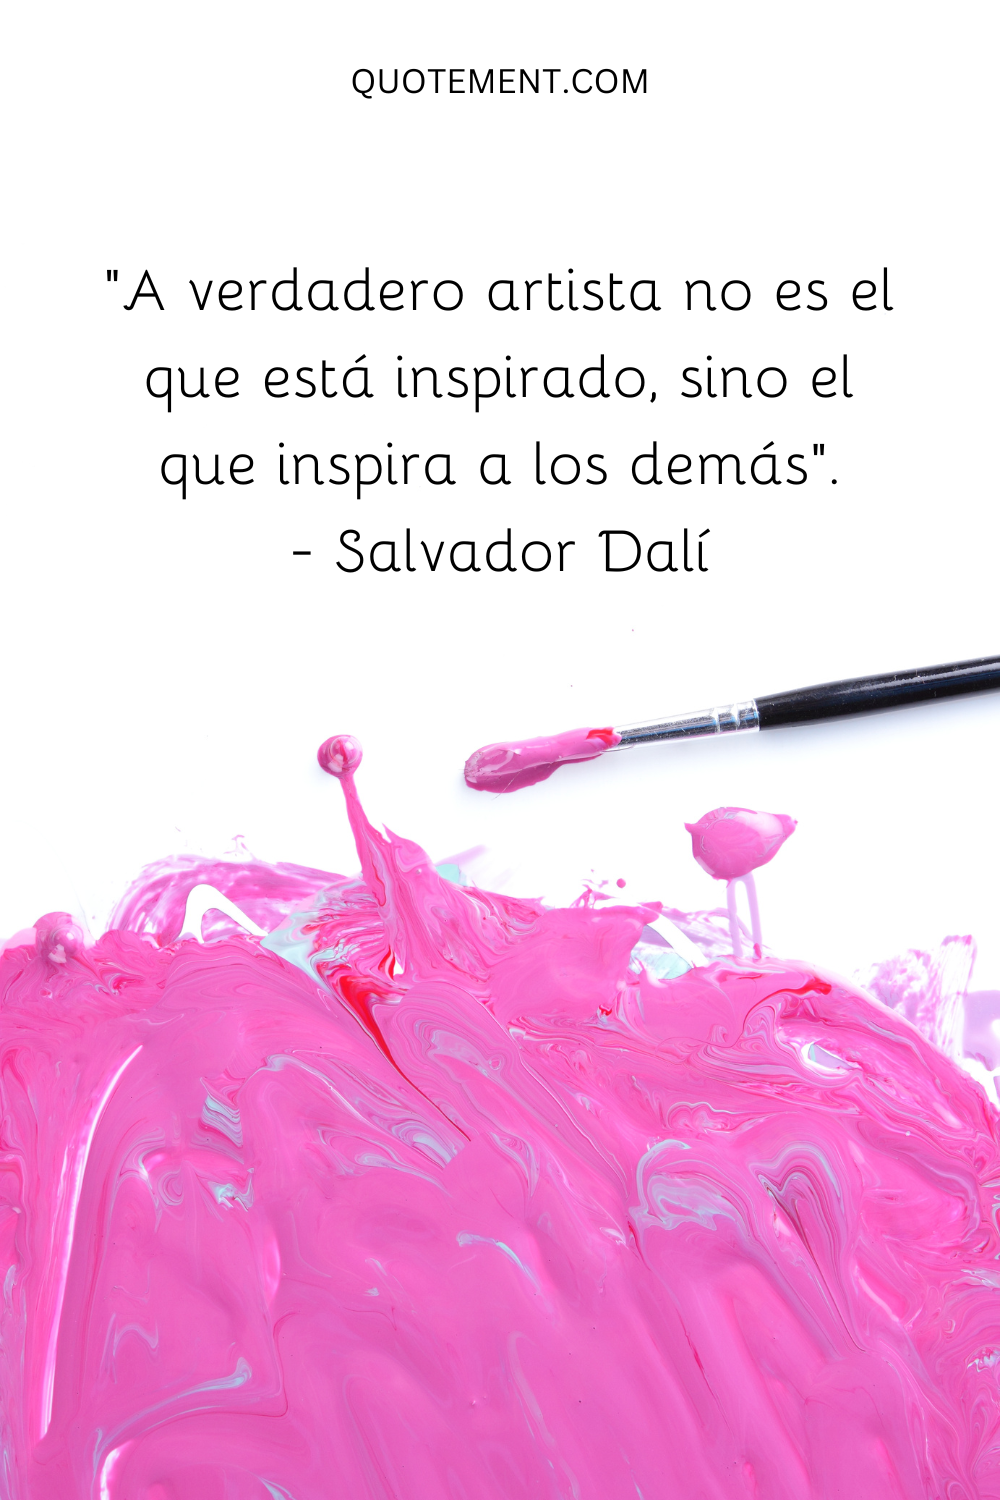 El verdadero artista no es el que está inspirado, sino el que inspira a los demás